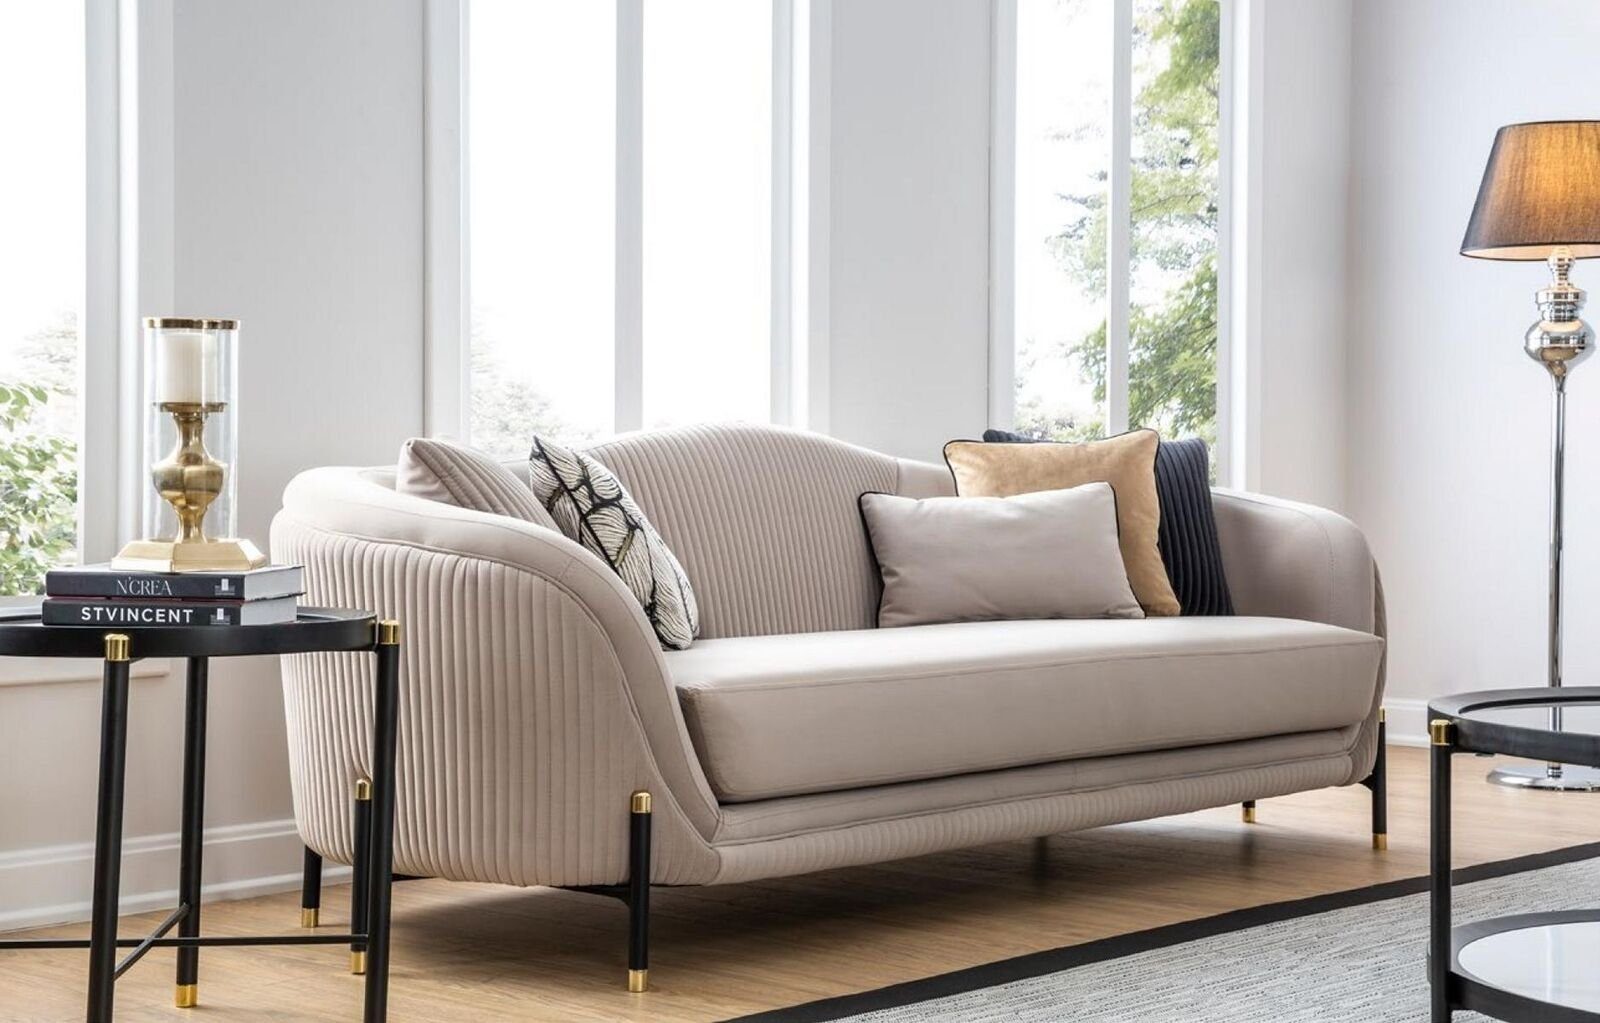 JVmoebel 3-Sitzer Sofa 3 Sitzer Polstersofa beige Textil Sitz Design Couch  Stoff Modern